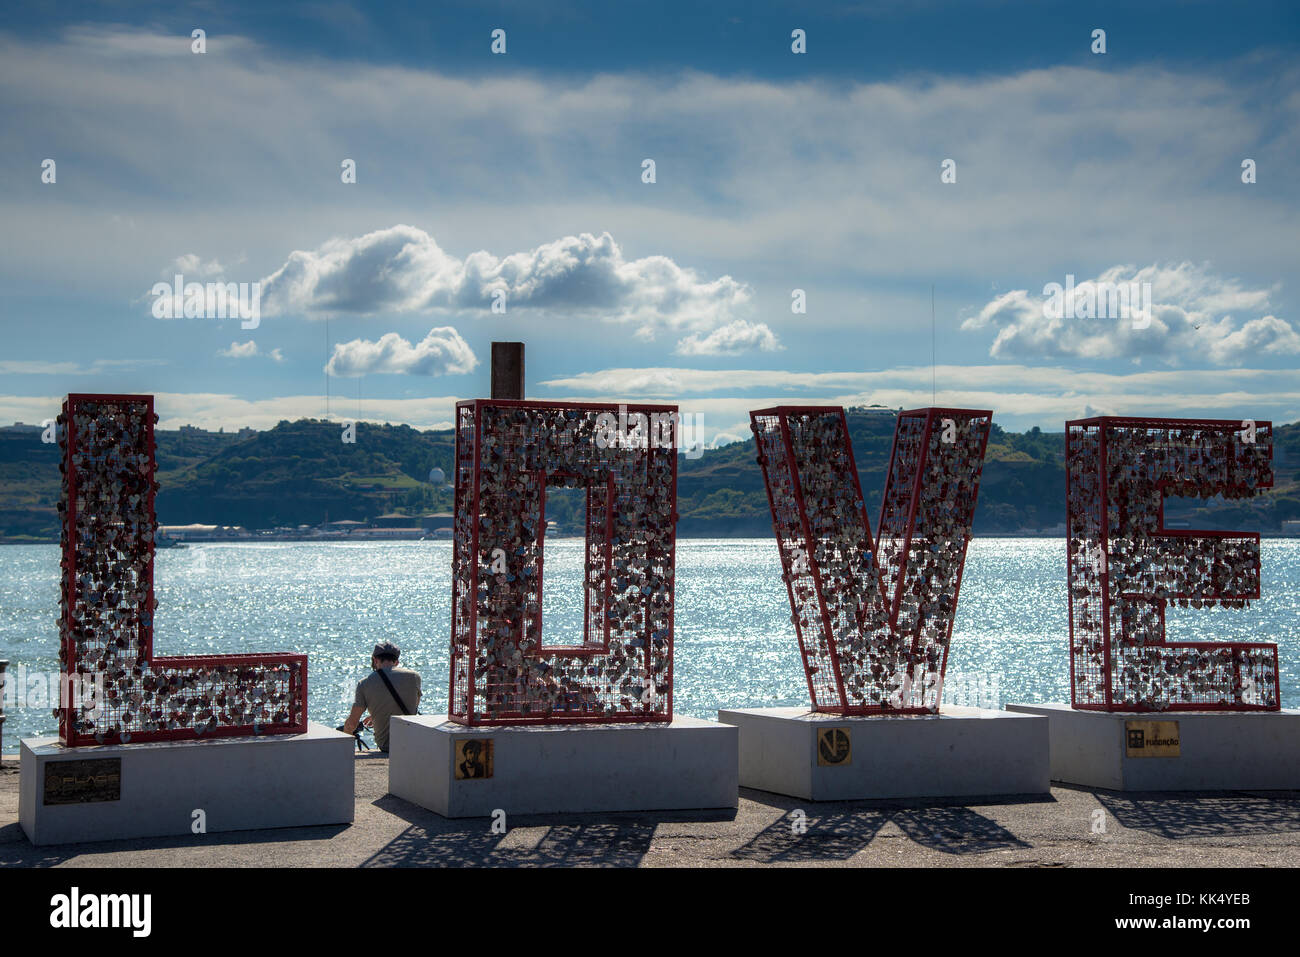 Bloquea colgar juntos como 'amor' a orillas del río Tajo en Lisboa en Portugal Foto de stock